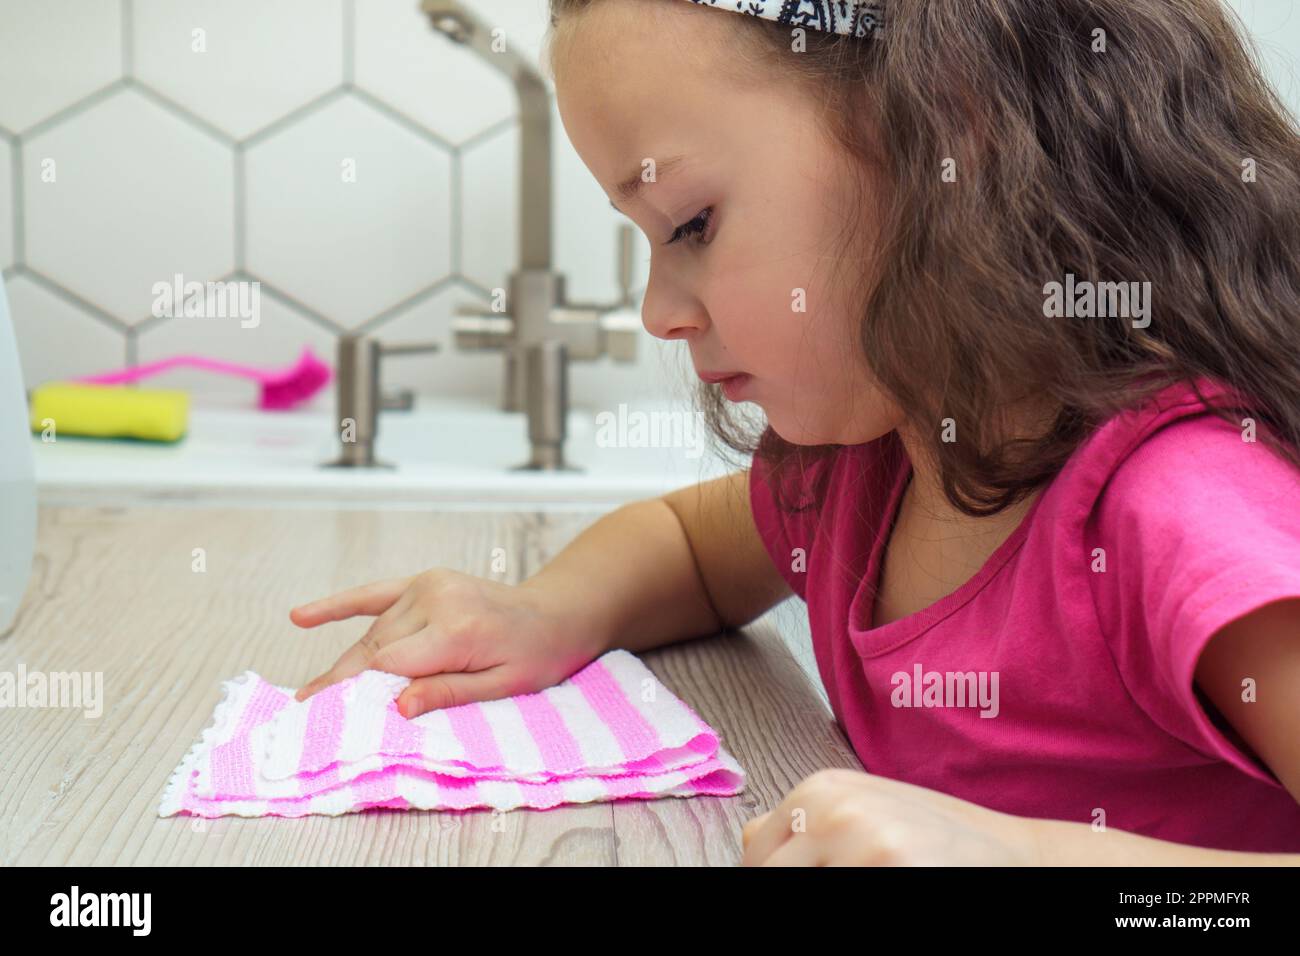 Hübsches kleines Mädchen, das den Küchentisch abwischte, mit einem Haushaltstuch zum Reinigen. Porträtaufnahme eines Kindes, das die Küche aufräumt. Stockfoto